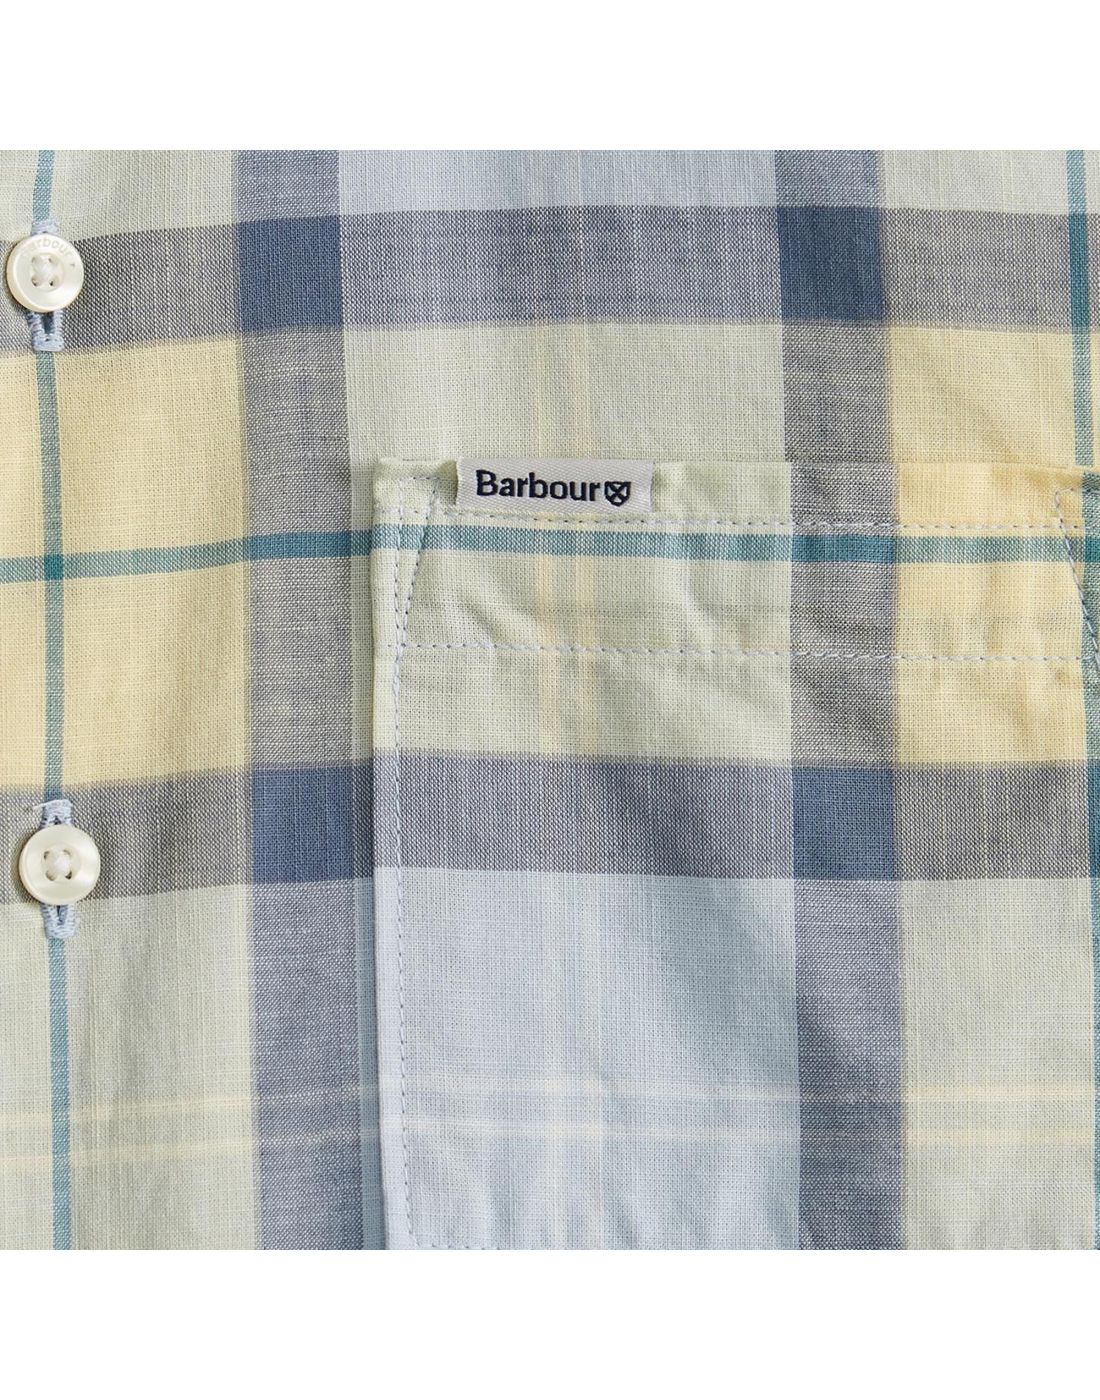 Barbour Boys Shirt